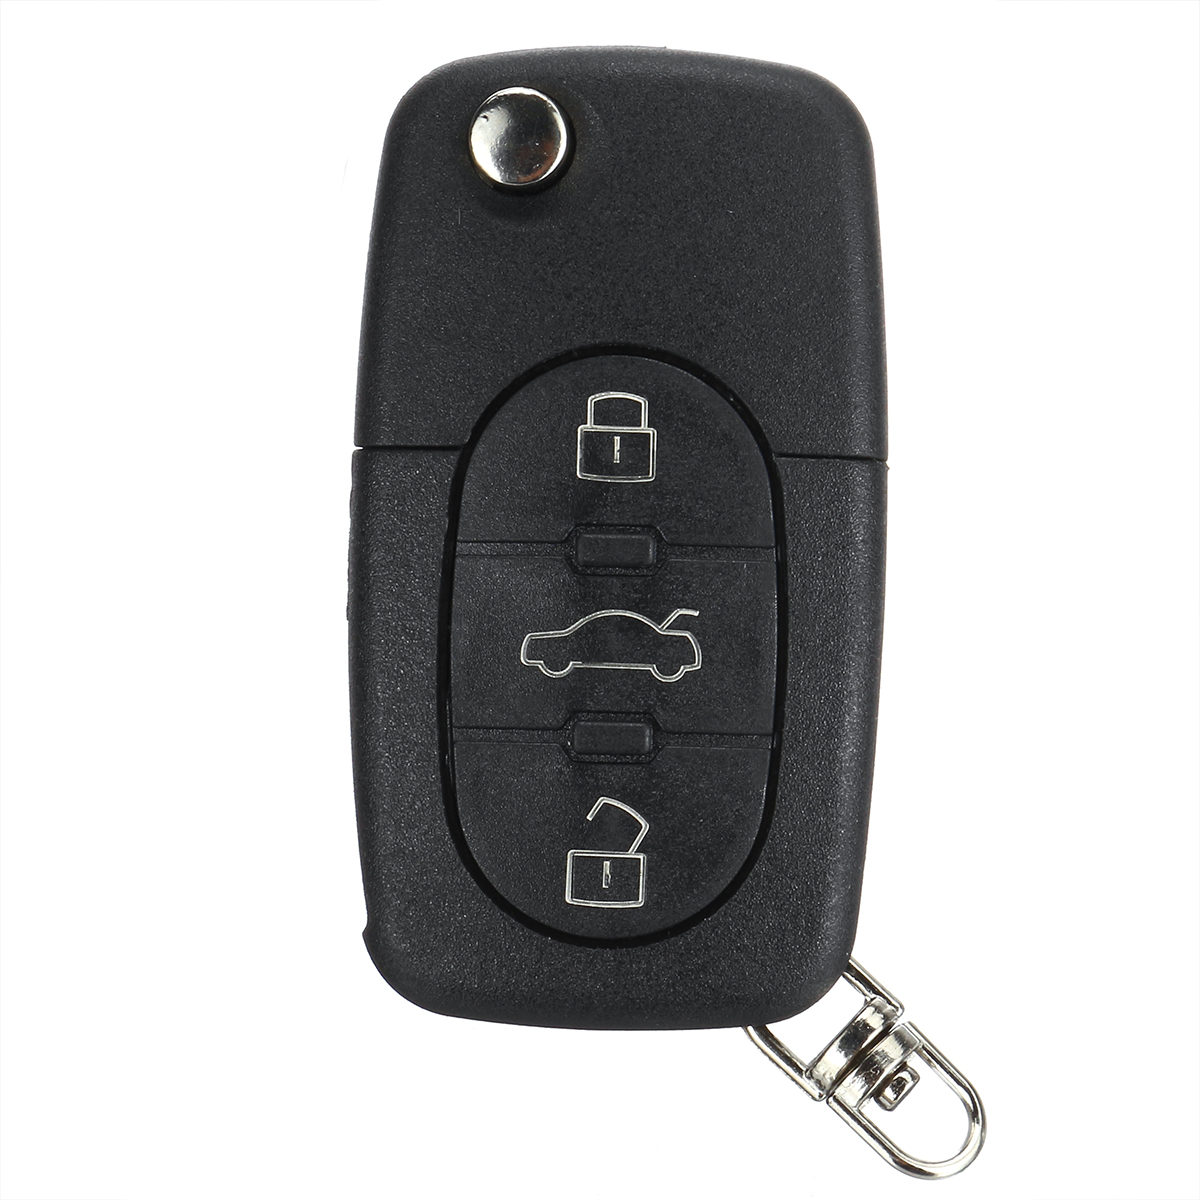 

3 шт. Черный Кнопки Авто Дистанционный брелок с Батарея для Audi A2 A3 A4 A6 A8 TT